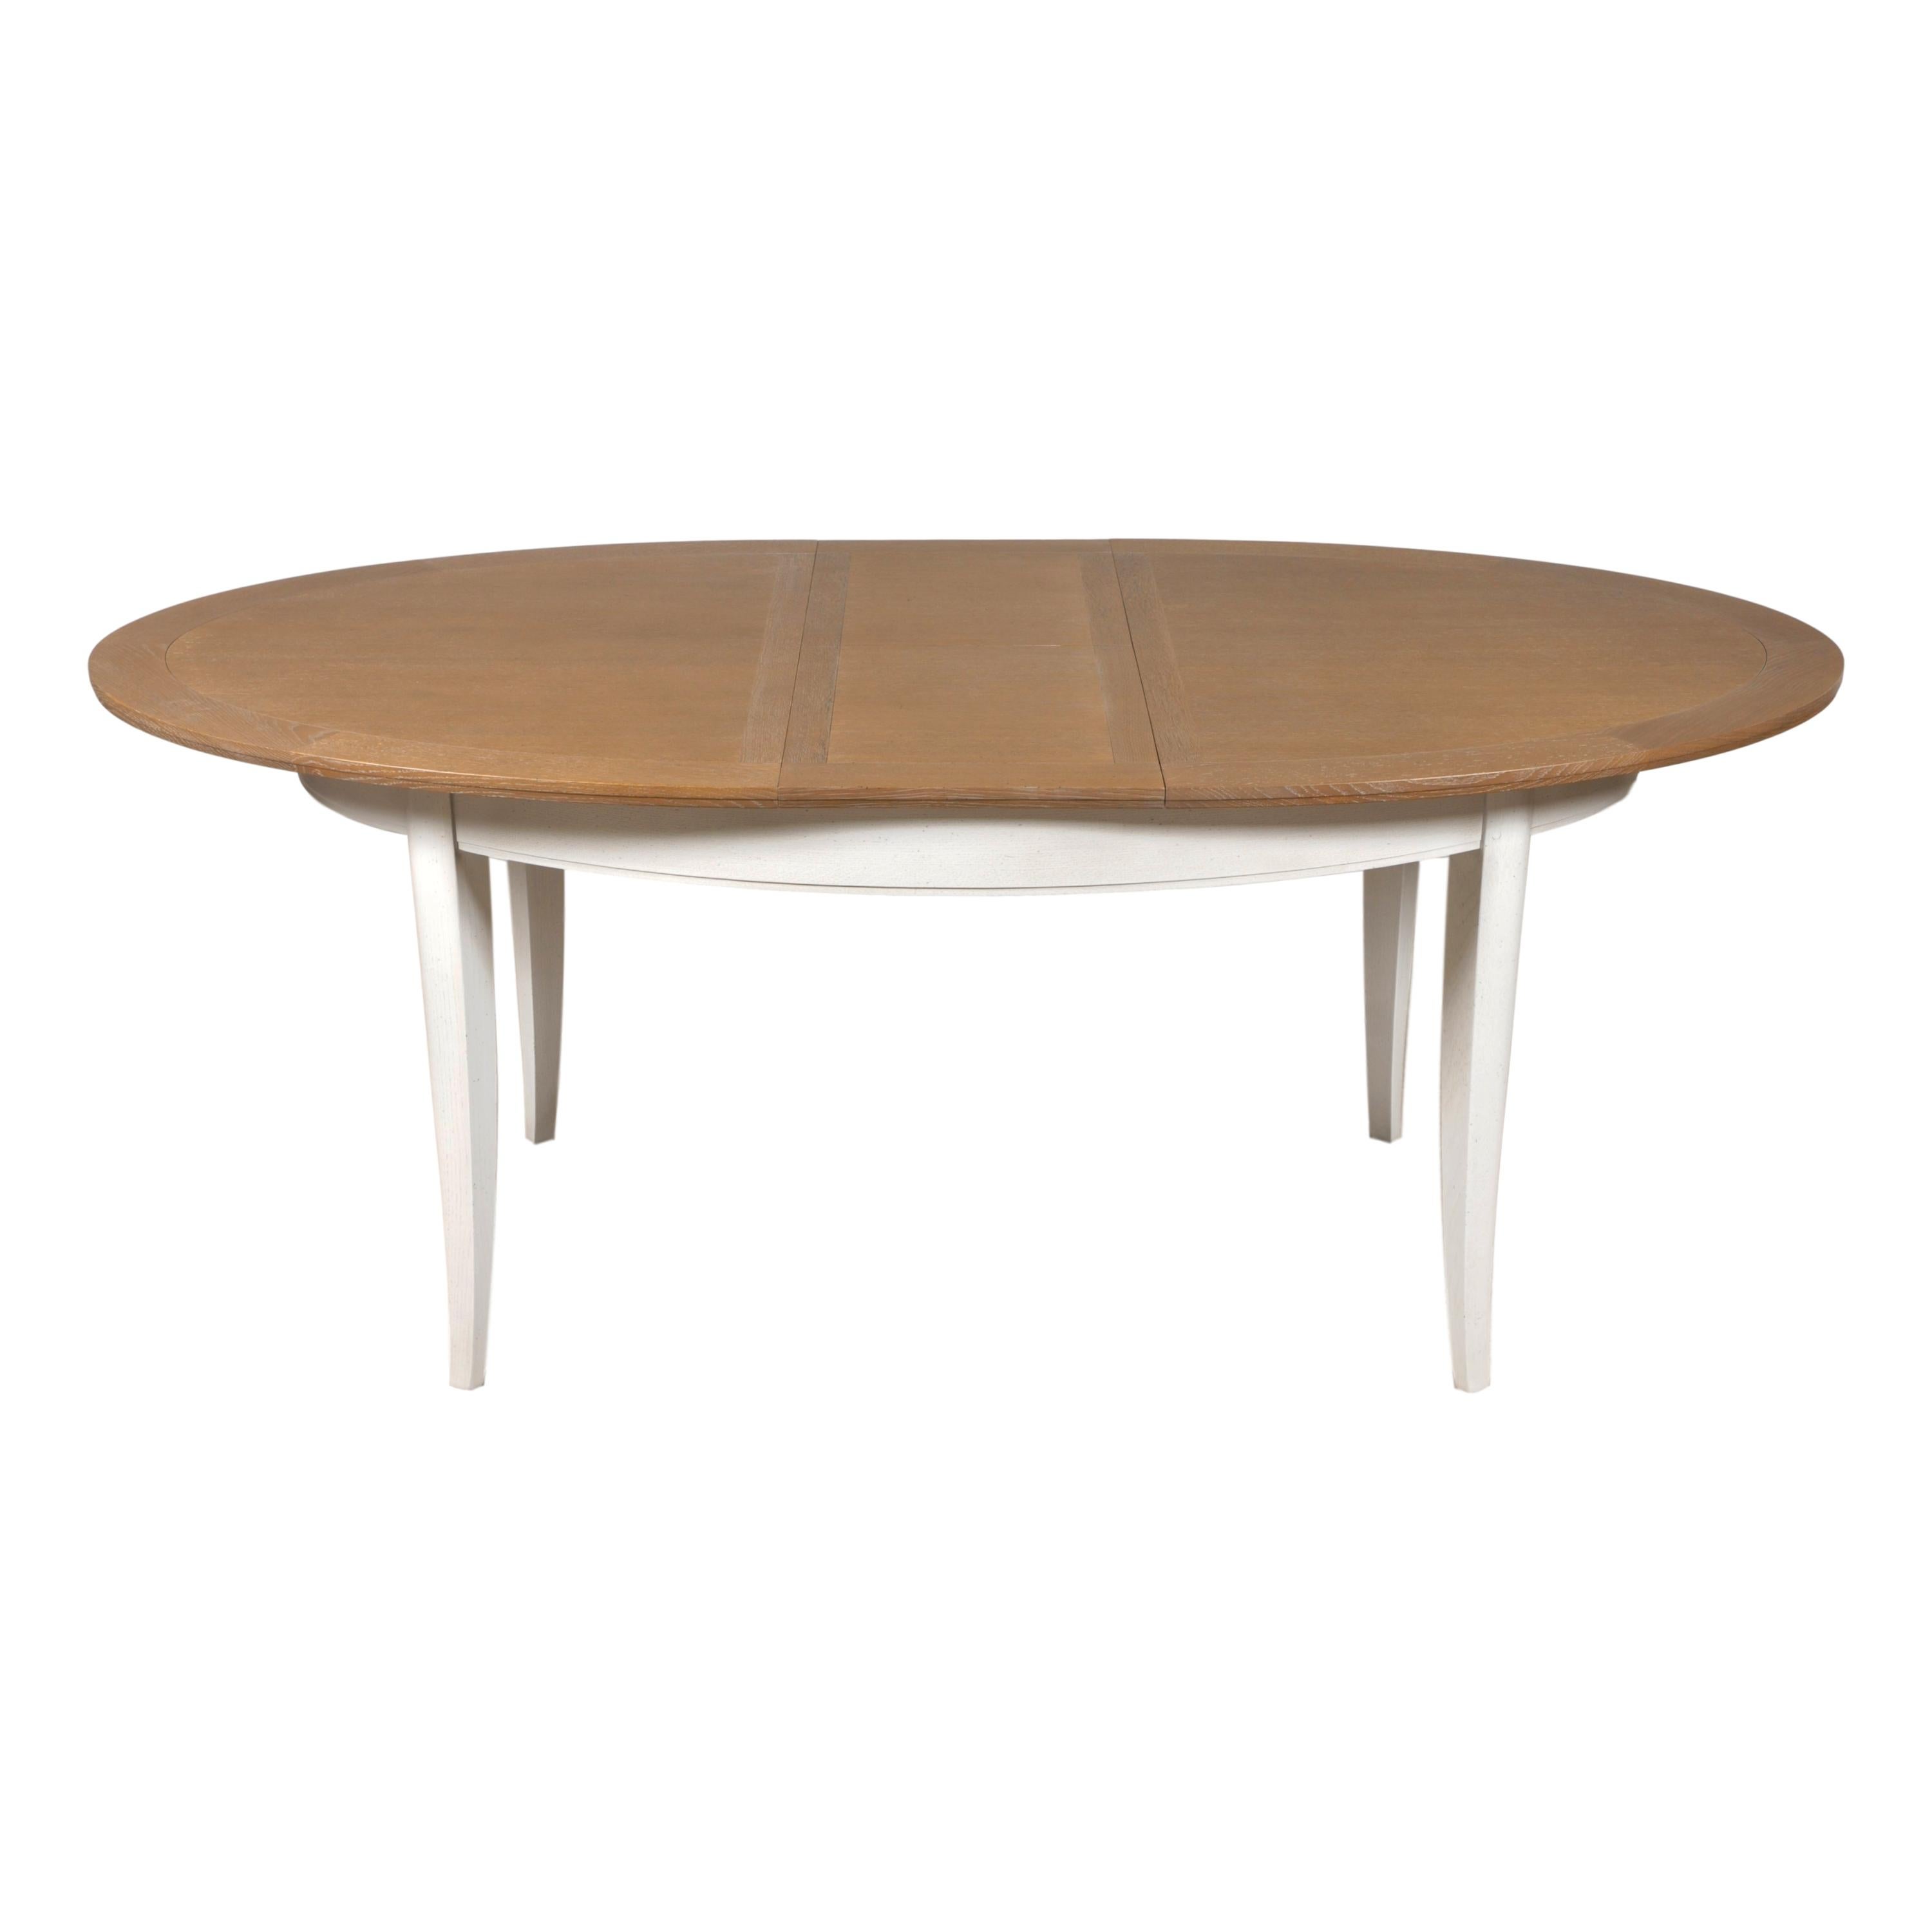 Le design de cette table à manger ovale est typique du style français provincial actuel et classique.

Cette table intègre 2 extensions pliées de 40 cm sous le plateau. Il peut accueillir de 6 à 10 personnes. 

La hauteur sous la ceinture est de 64